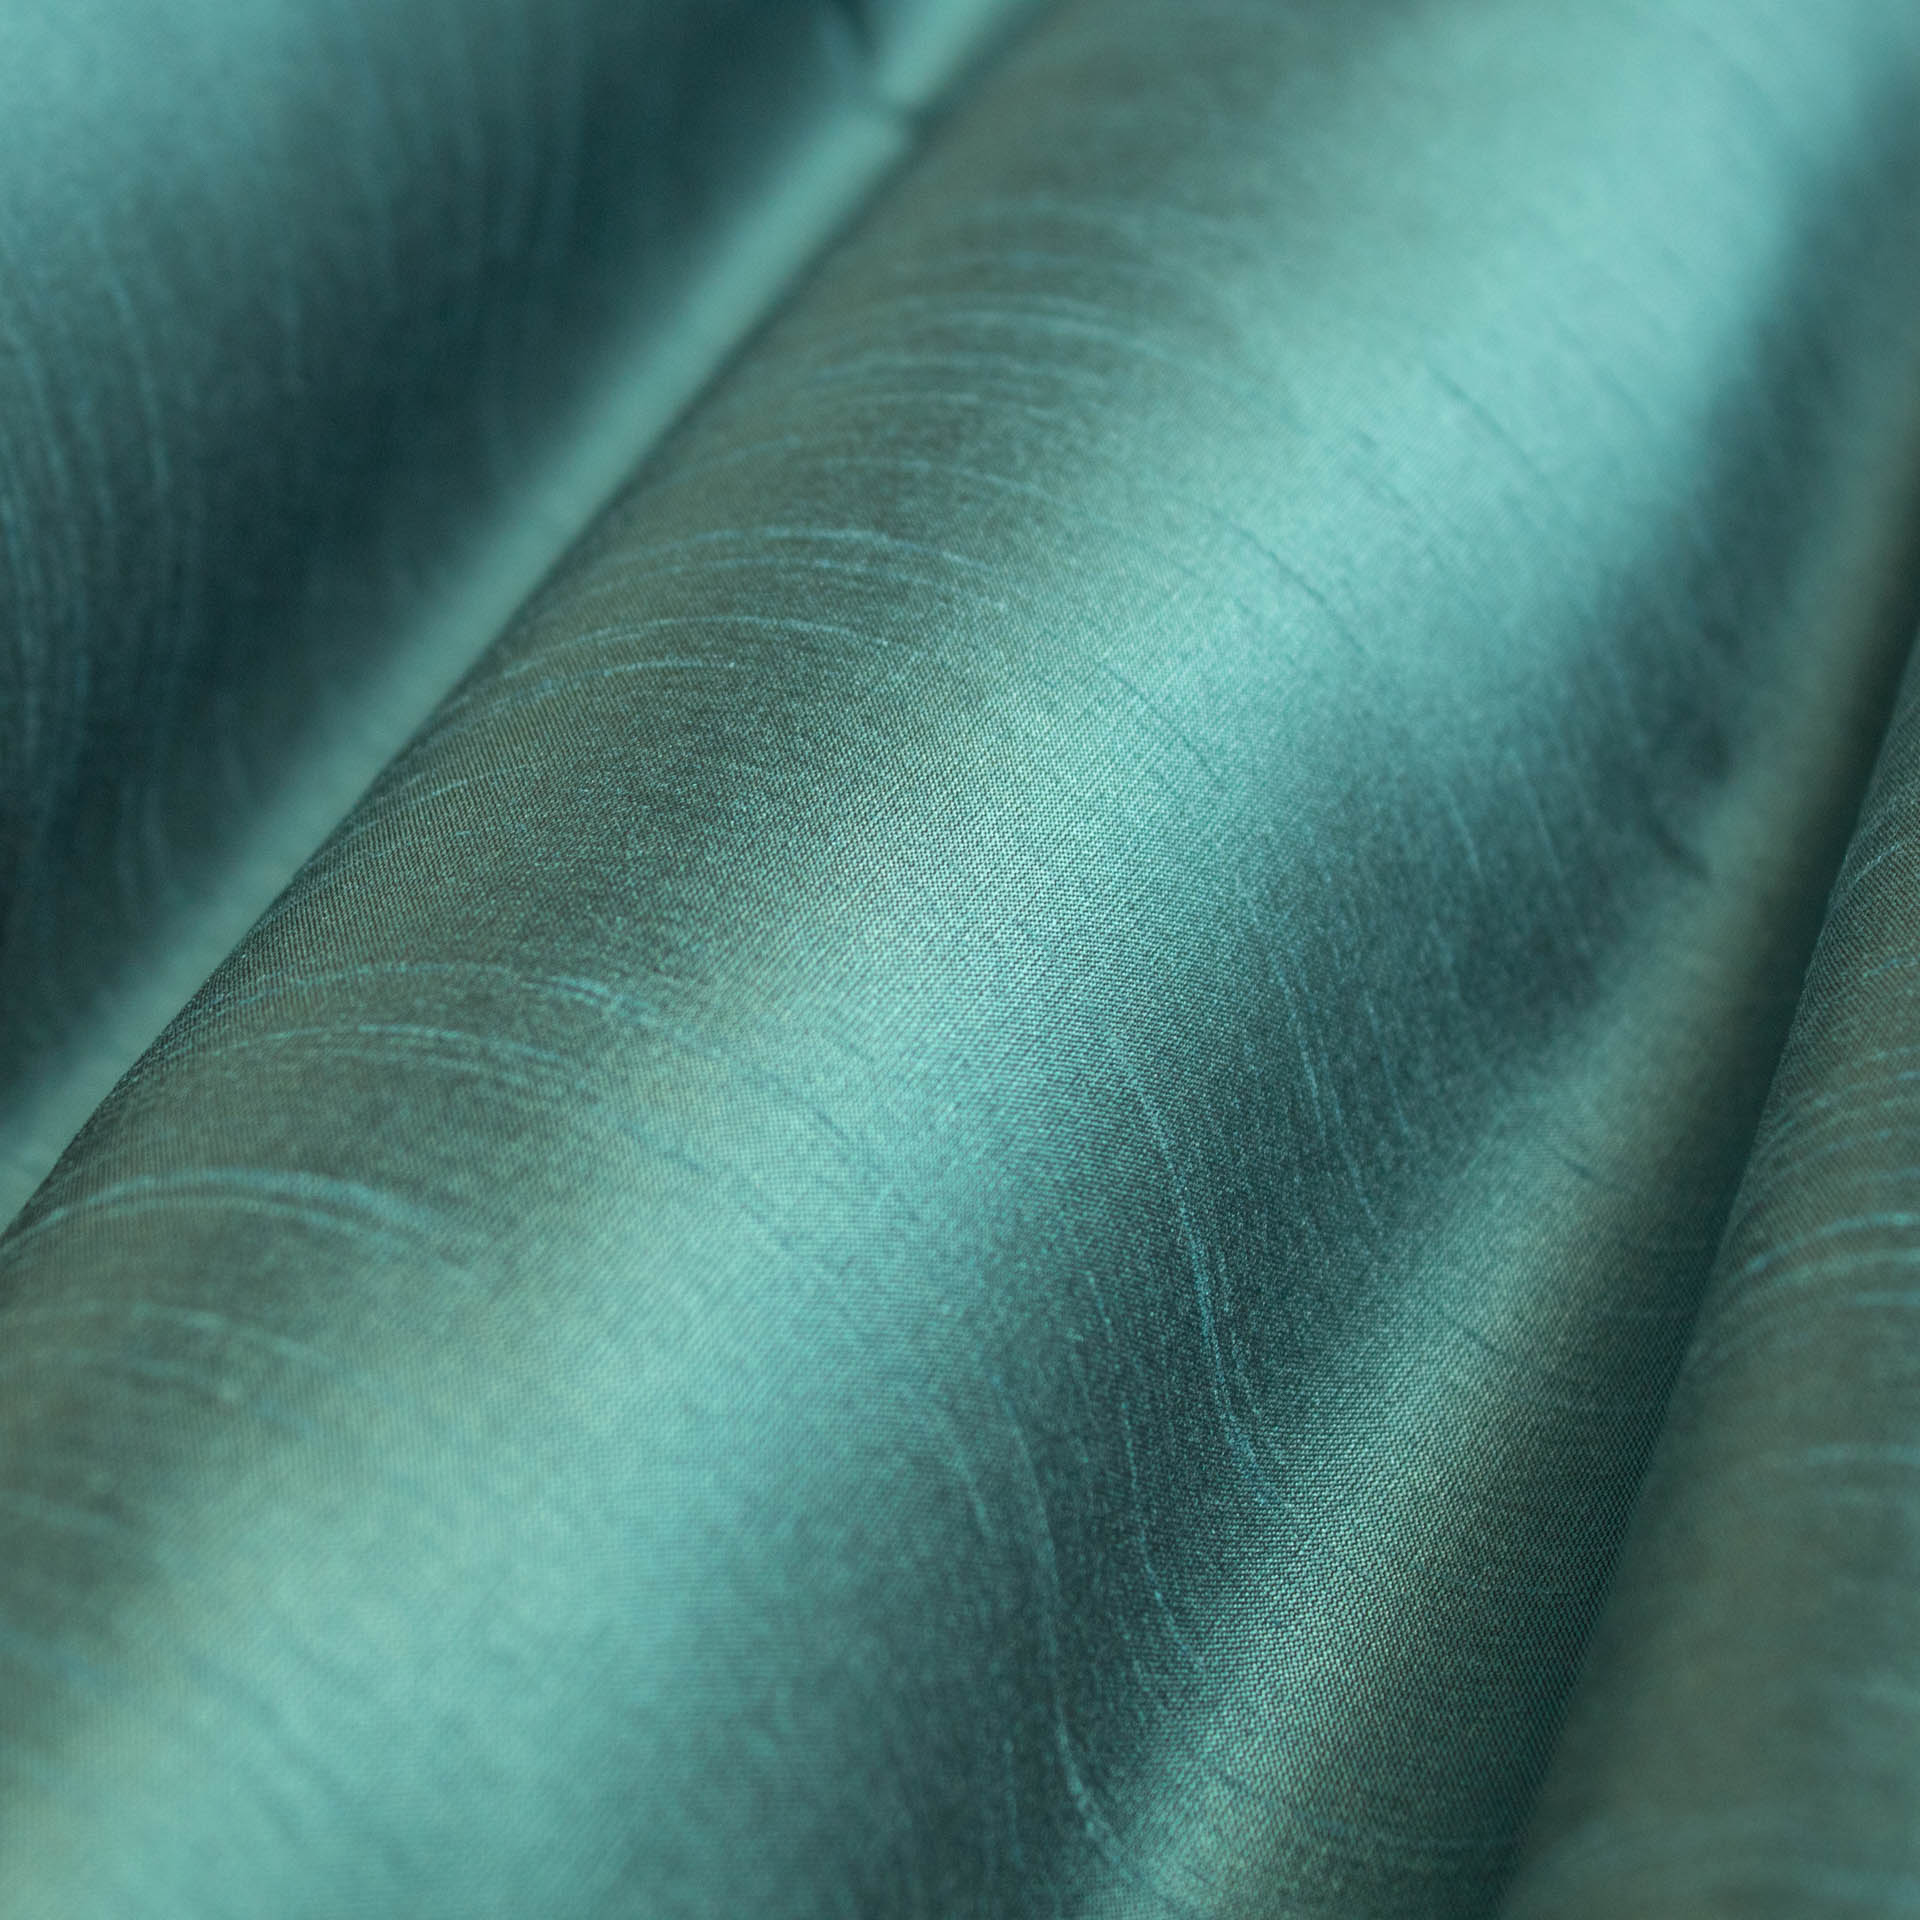 Aquamarine Blue Satin Fabric